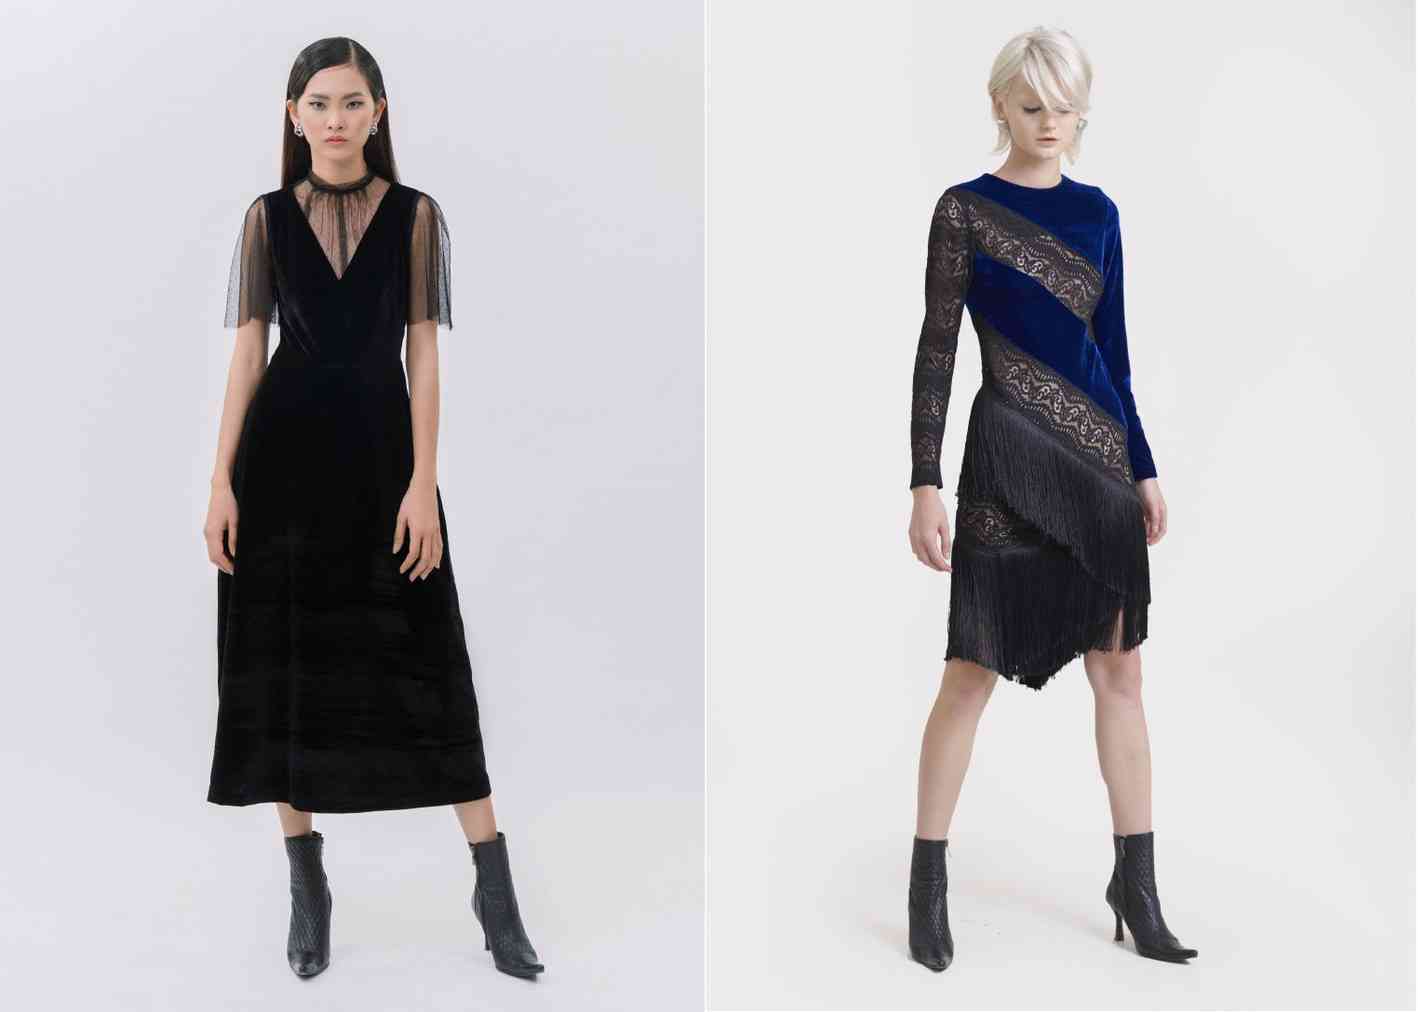 BST Party mới nhất cua thương hiệu Marc Fashion cũng có nhiều mẫu váy đầm được thiết kế từ chất liệu nhung